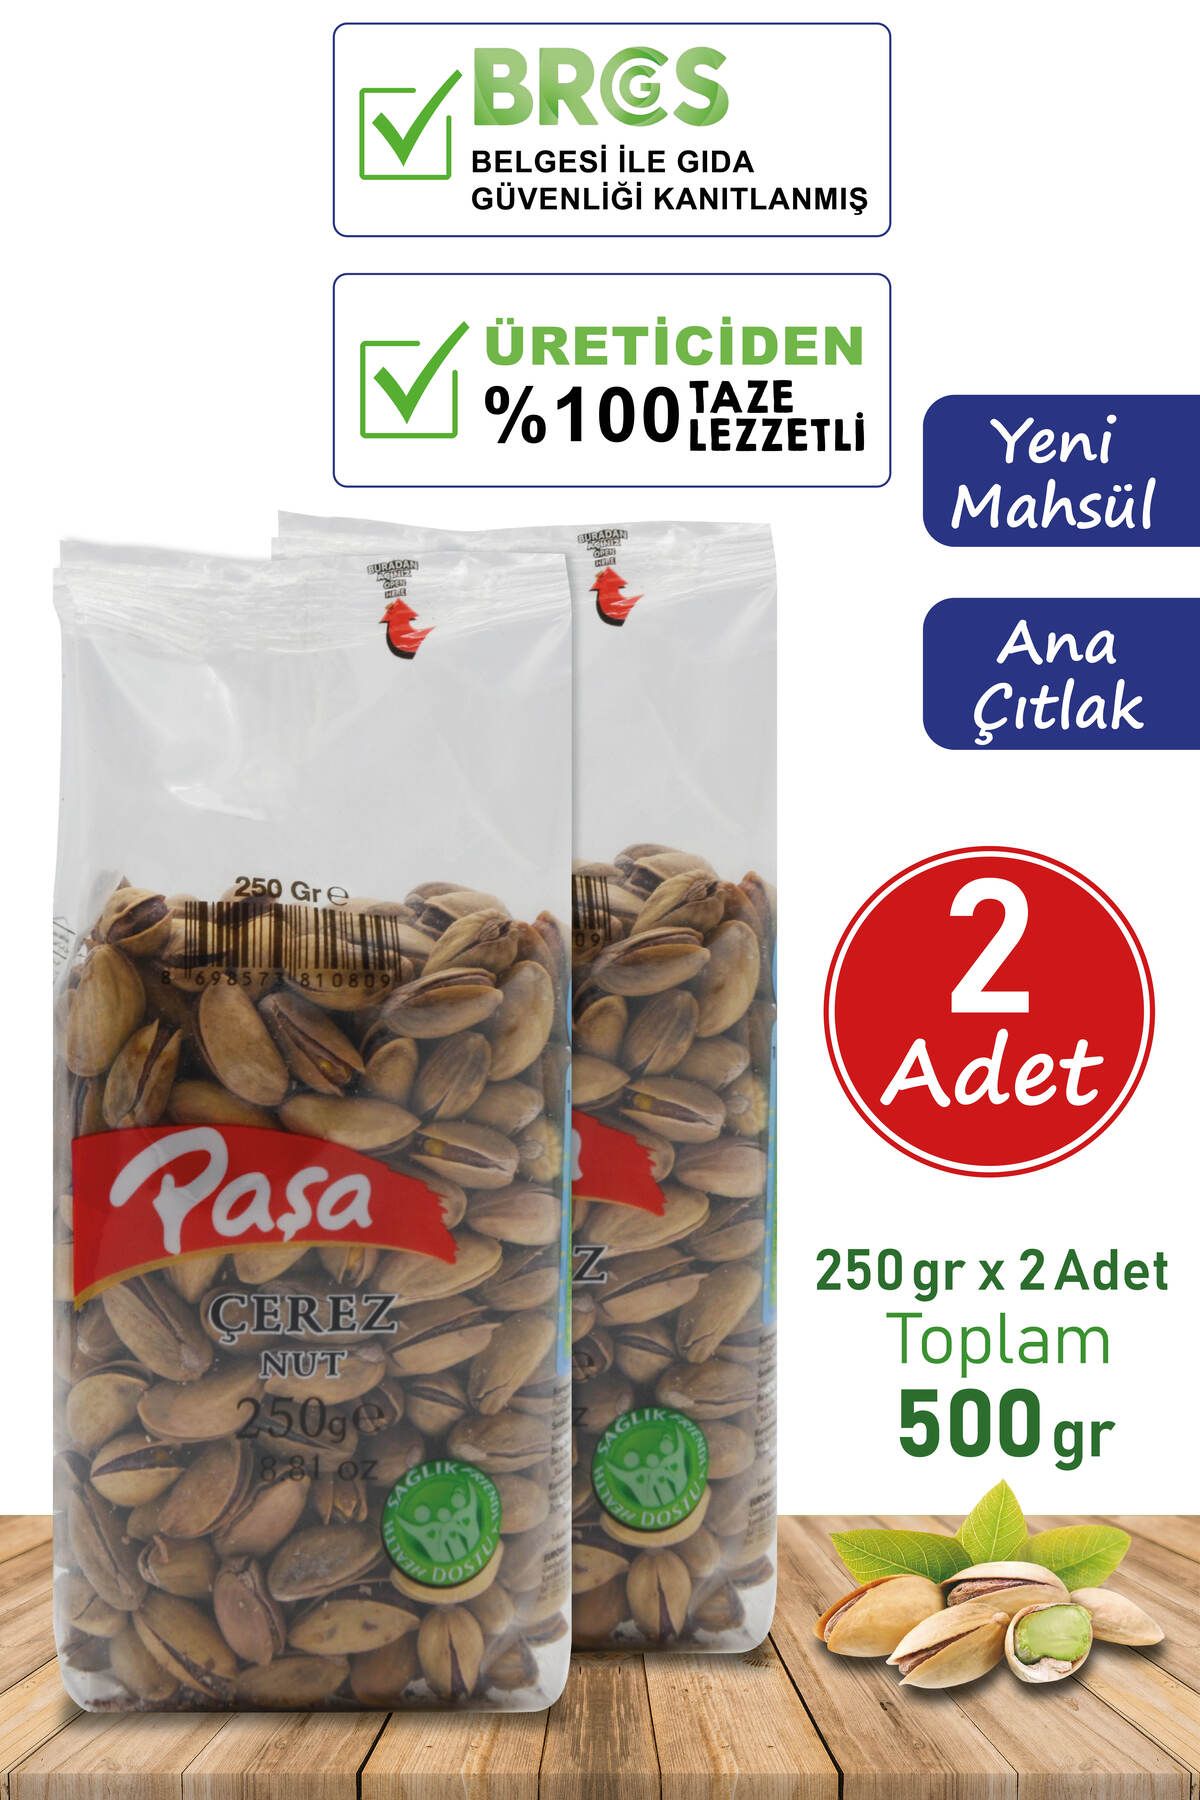 Paşa Kuruyemiş Kavrulmuş Antep Fıstığı Şeffaf Paket 250 gr X 2 Adet (1. KALİTE)